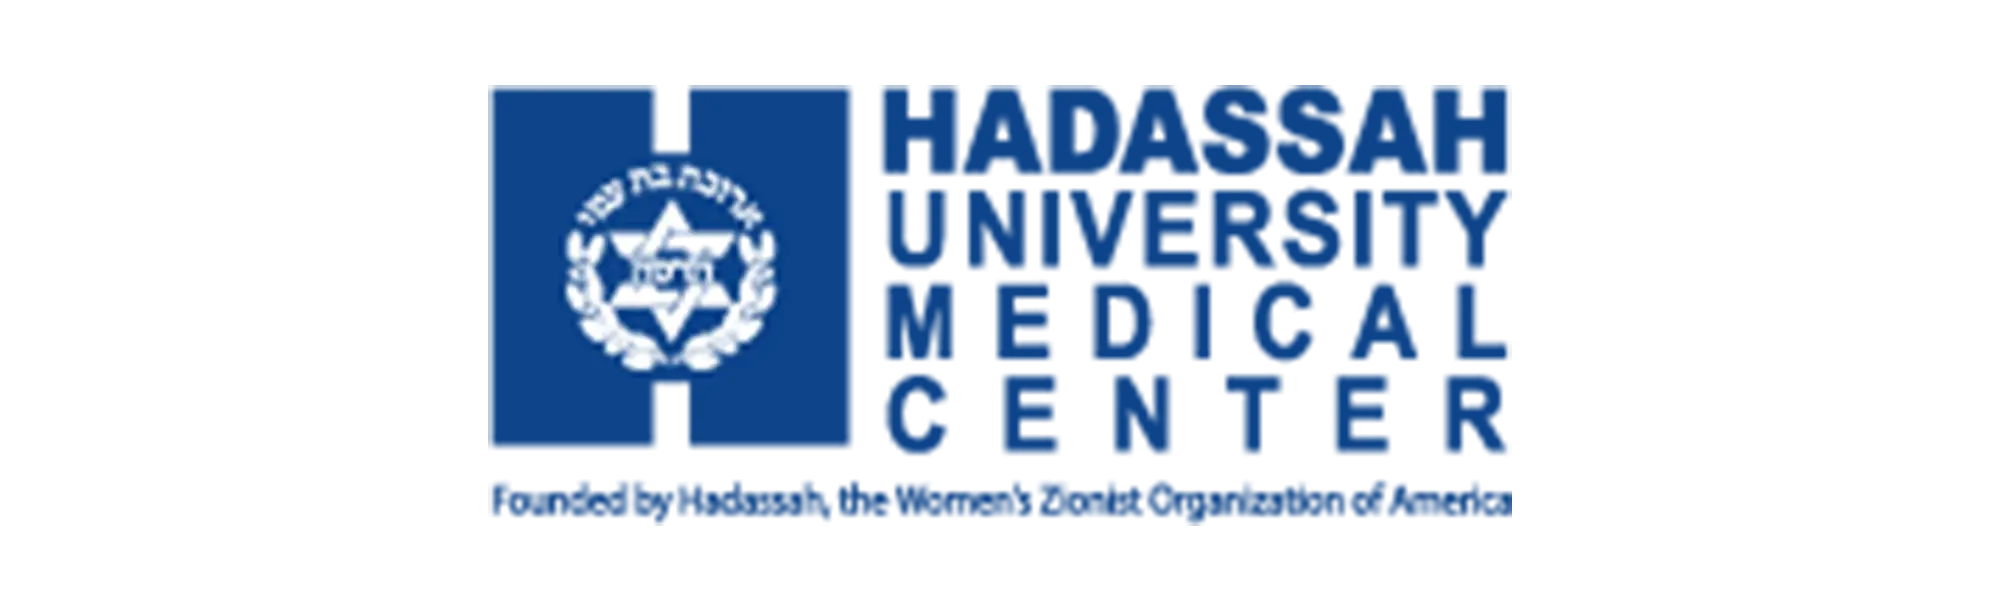 Hadassah medical centers